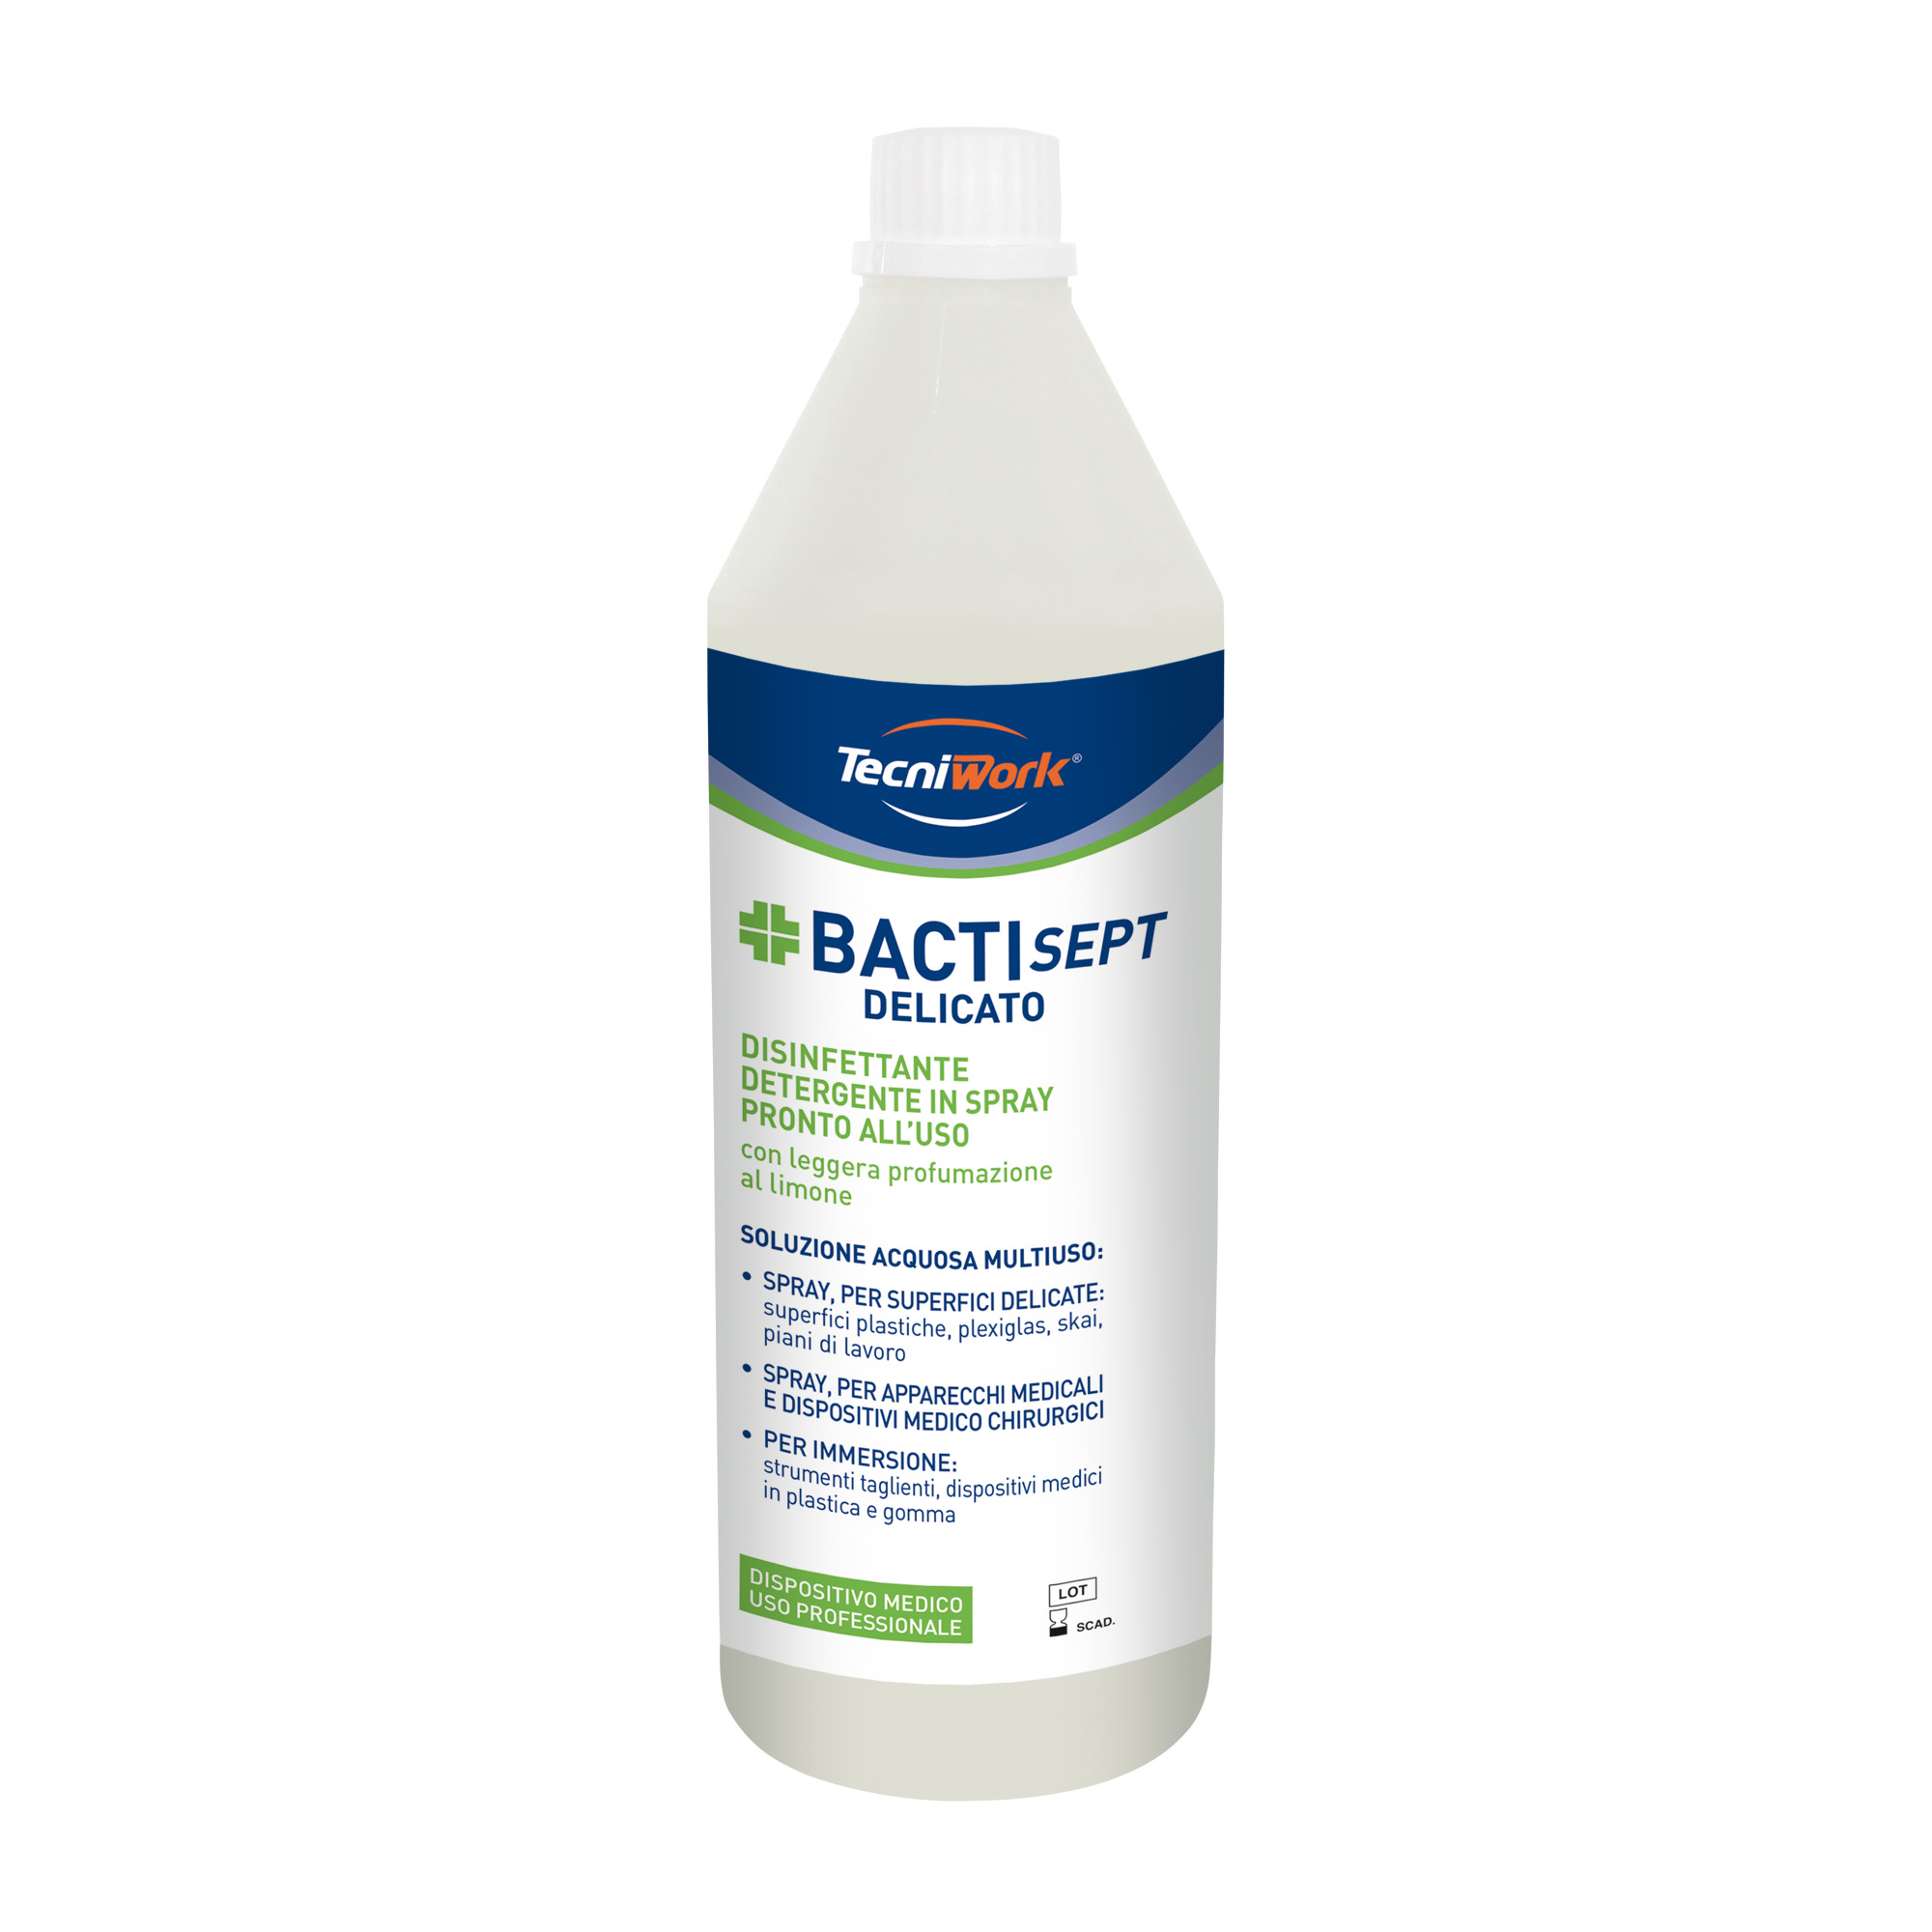 Disinfettante detergente pronto all'uso per superfici delicate Bactisept Delicato 1 l